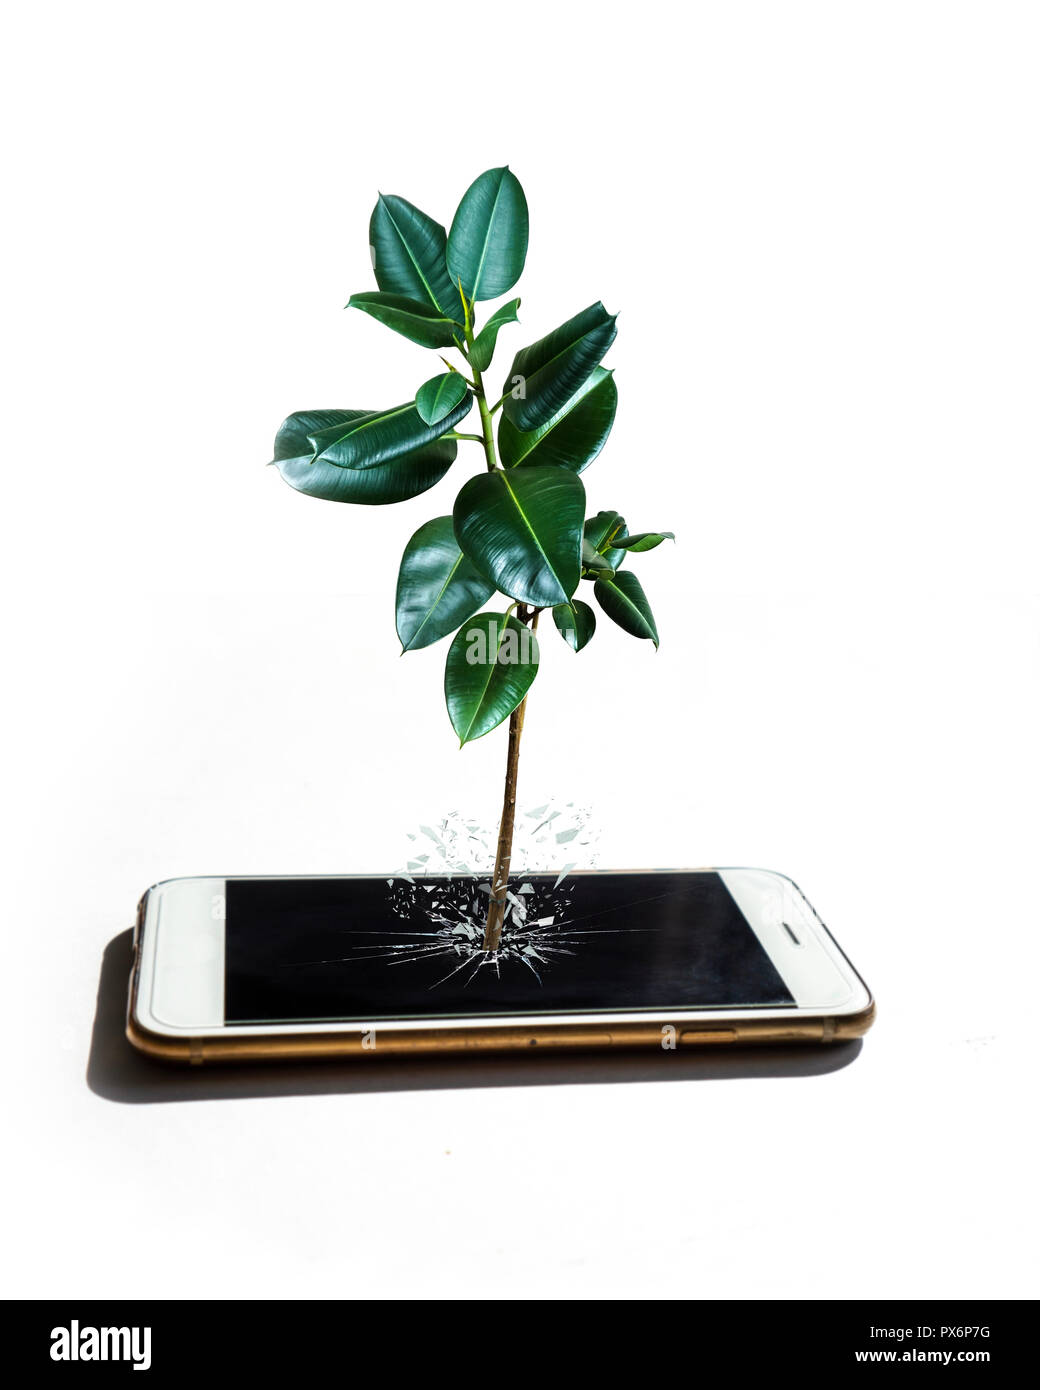 Par rapport à la nature puissante technologie / croissance de la technologie concept isolé sur blanc / photo sur une plante en train de devenir des / unpluged concept Banque D'Images